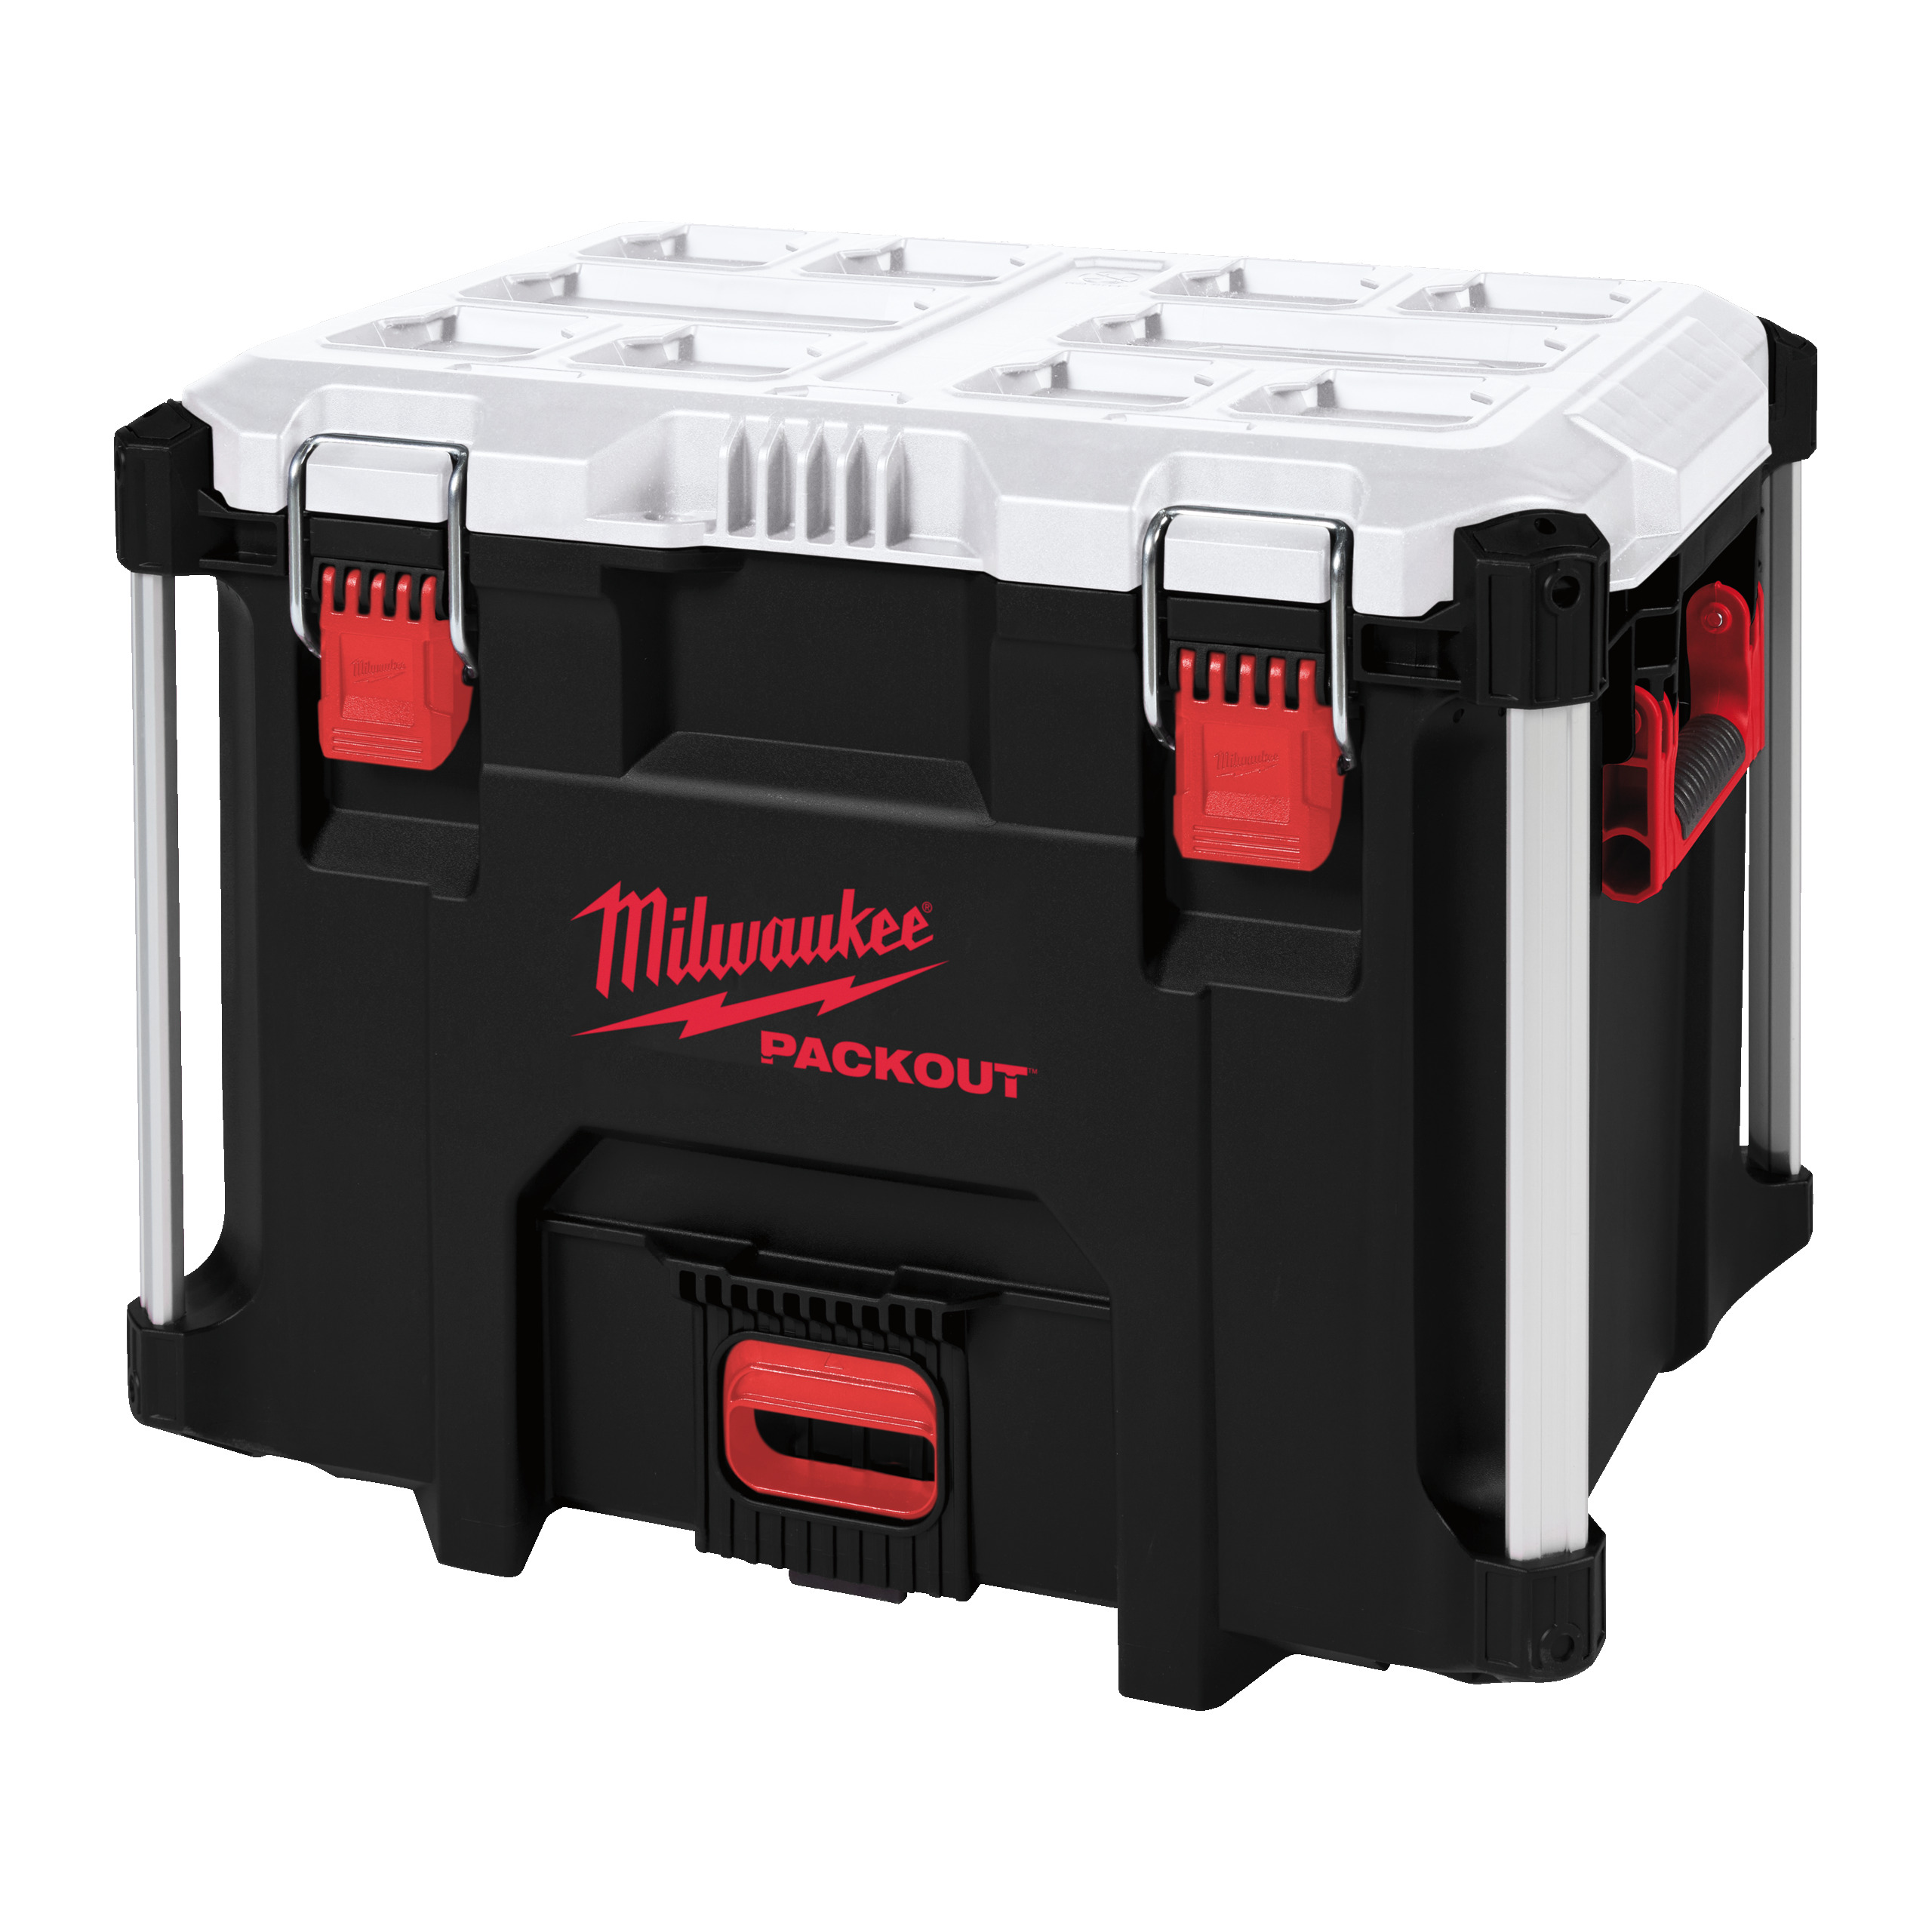 Milwaukee Packout XL Cooler 4932478648